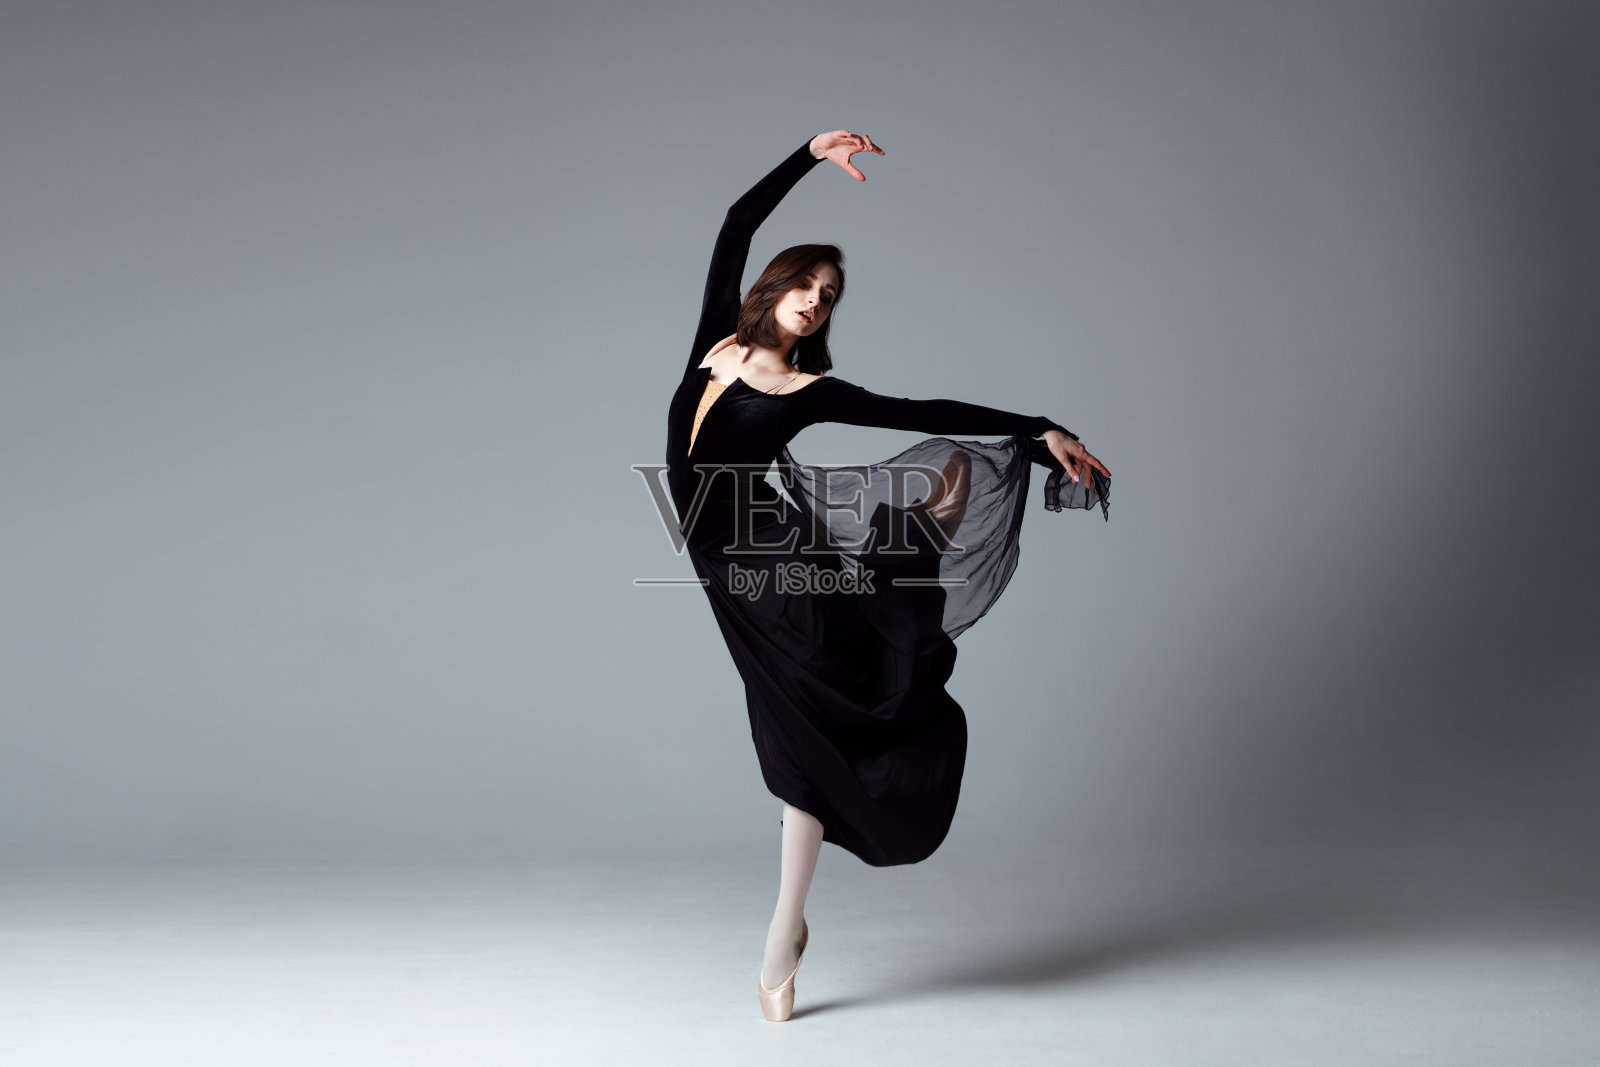 穿着黑色长裙的苗条芭蕾舞者照片摄影图片